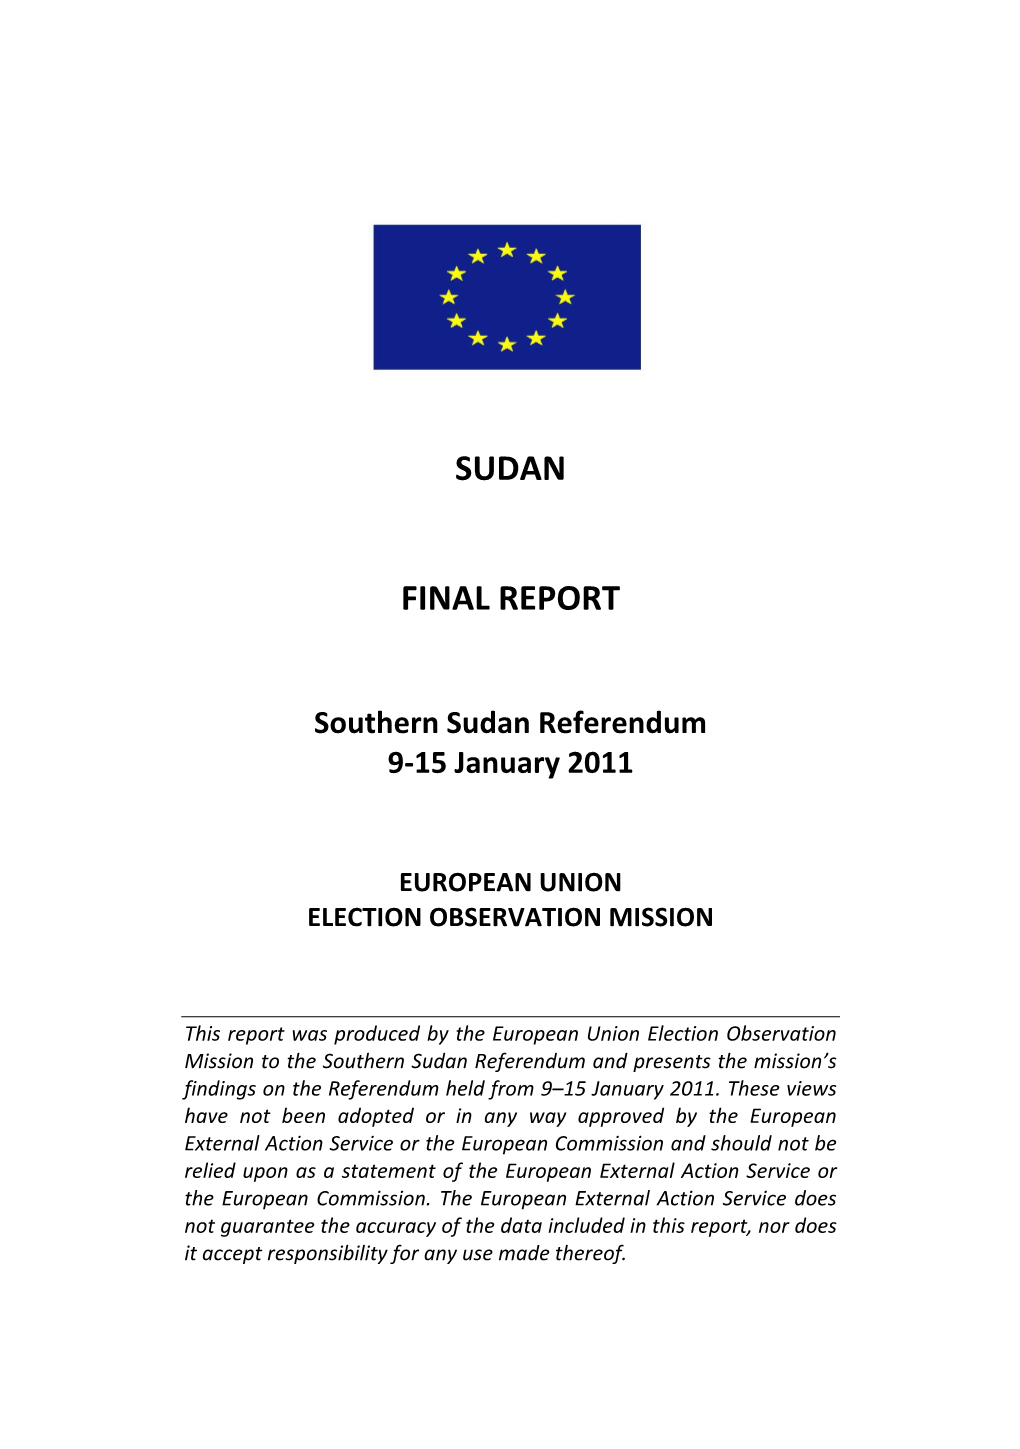 Sudan Final Report